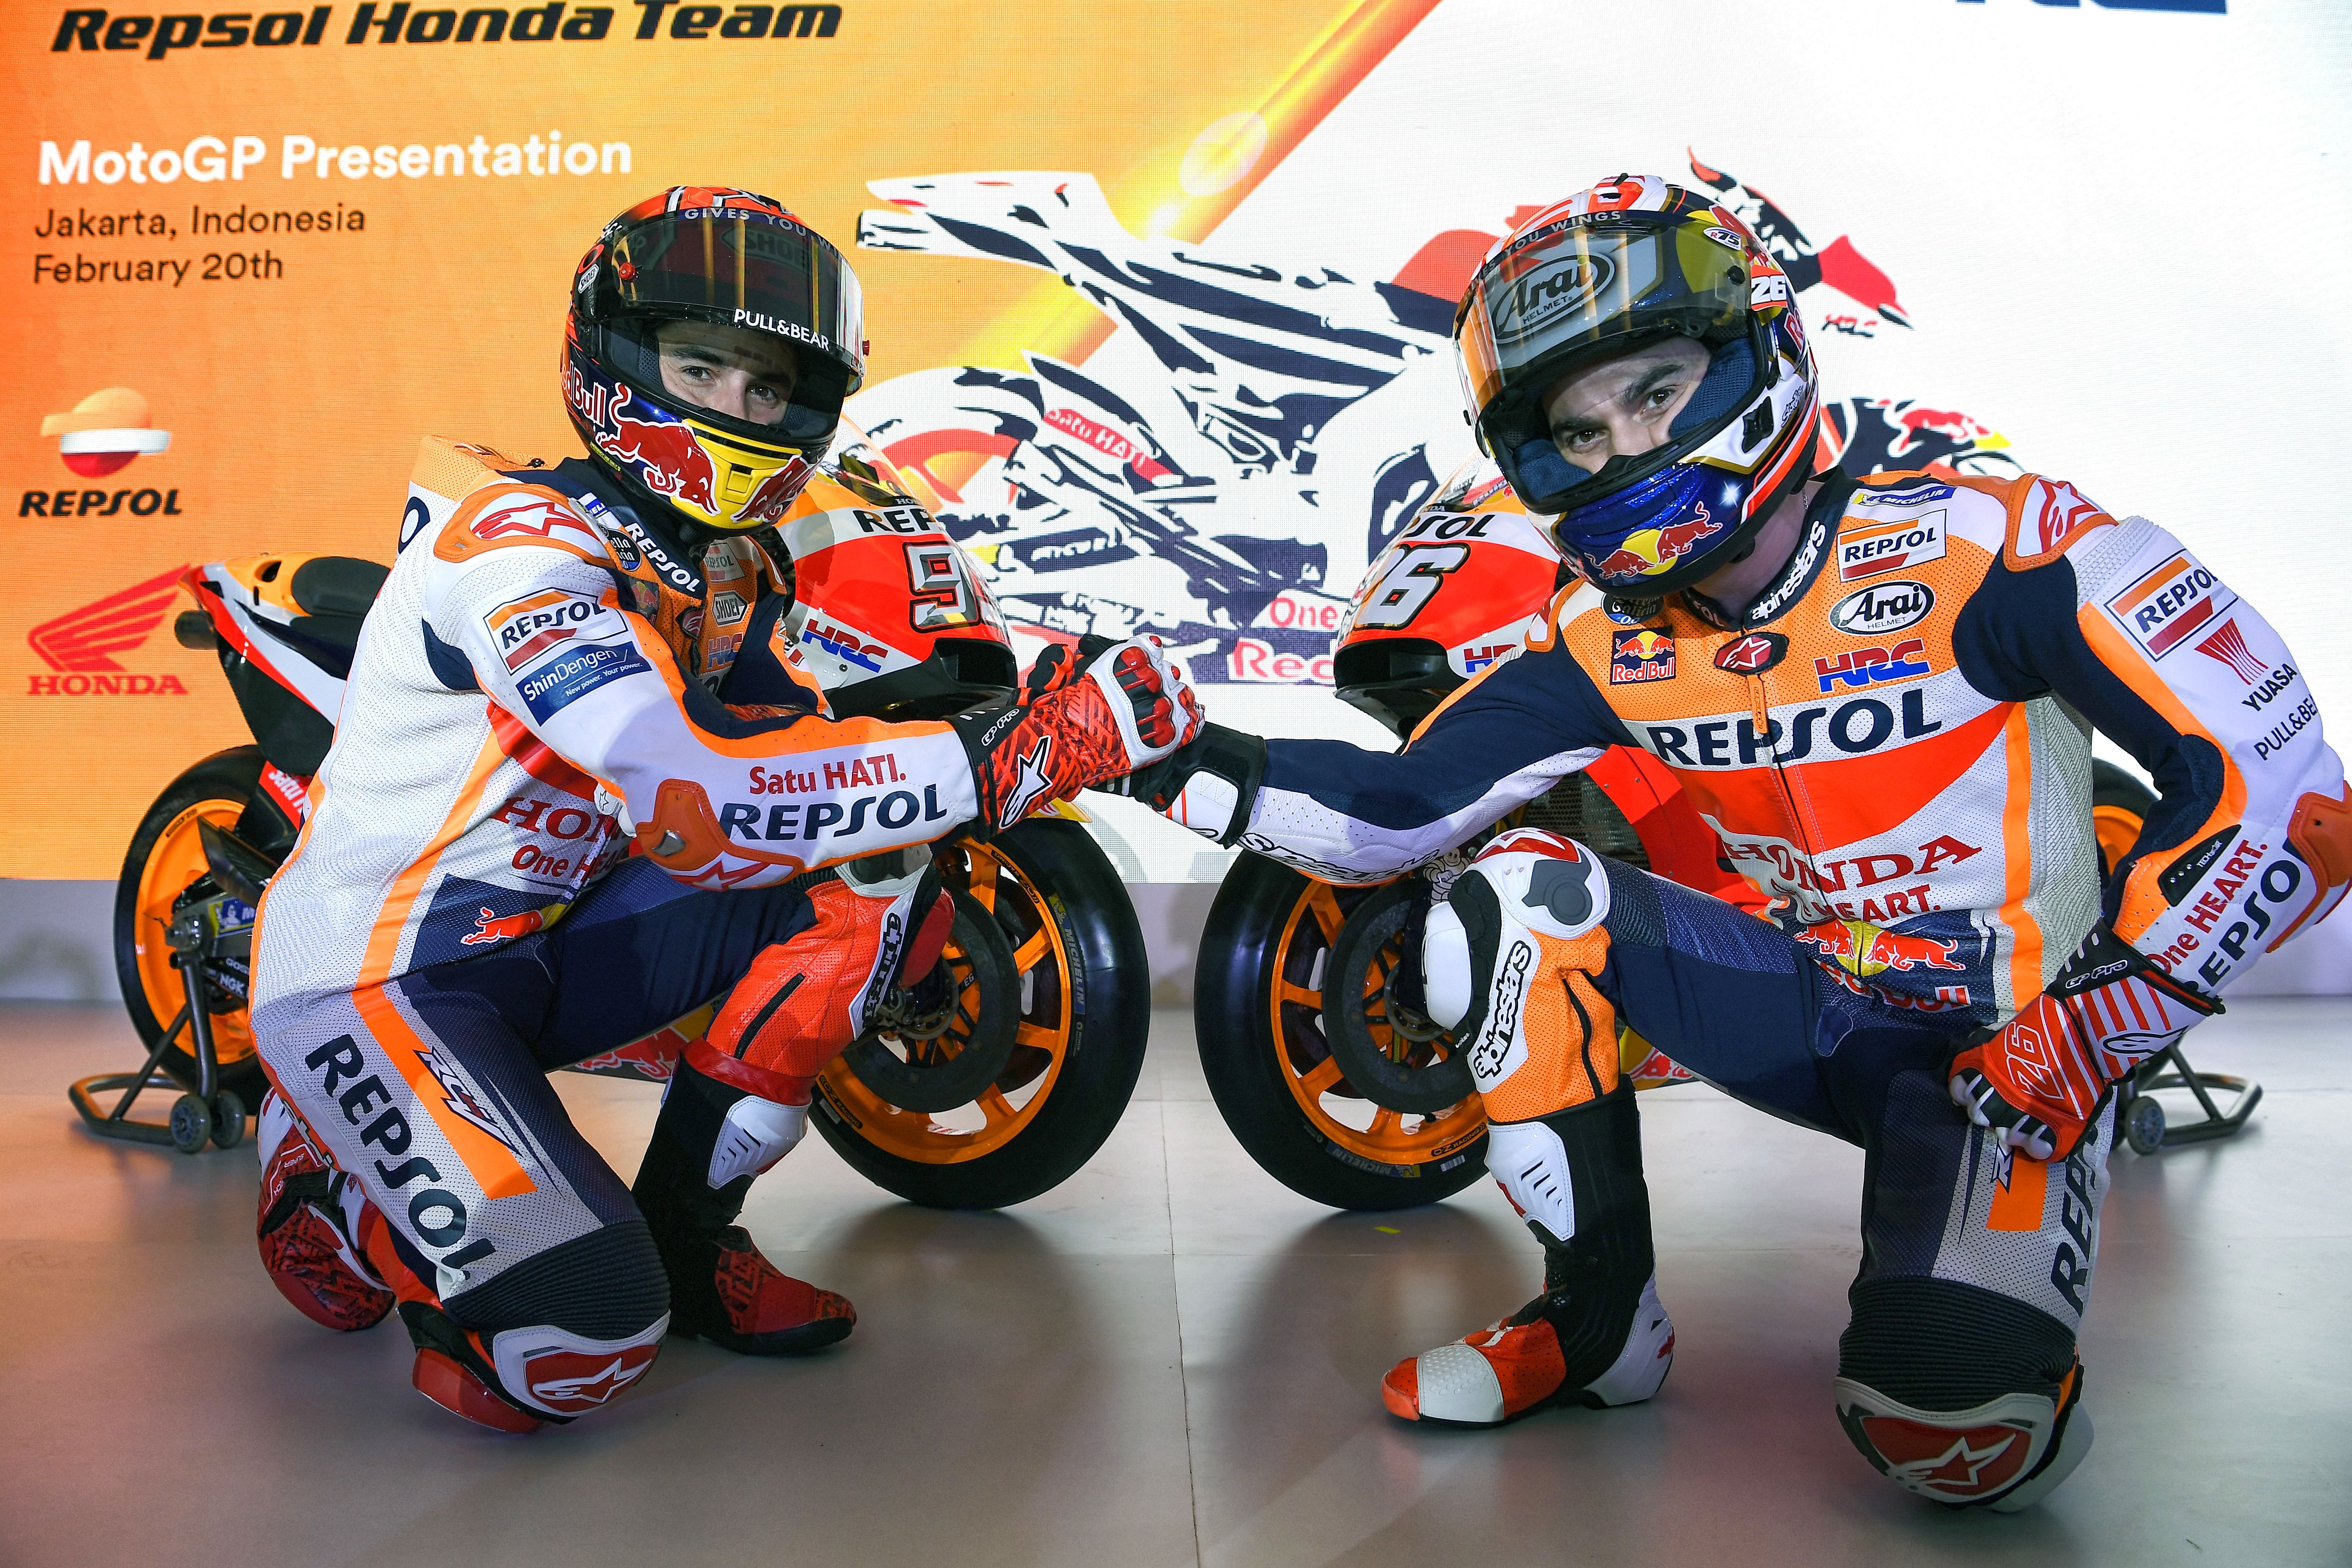 Honda Việt Nam tiếp tục tài trợ cho đội đua MotoGP Repsol Honda trong mùa giải 2018